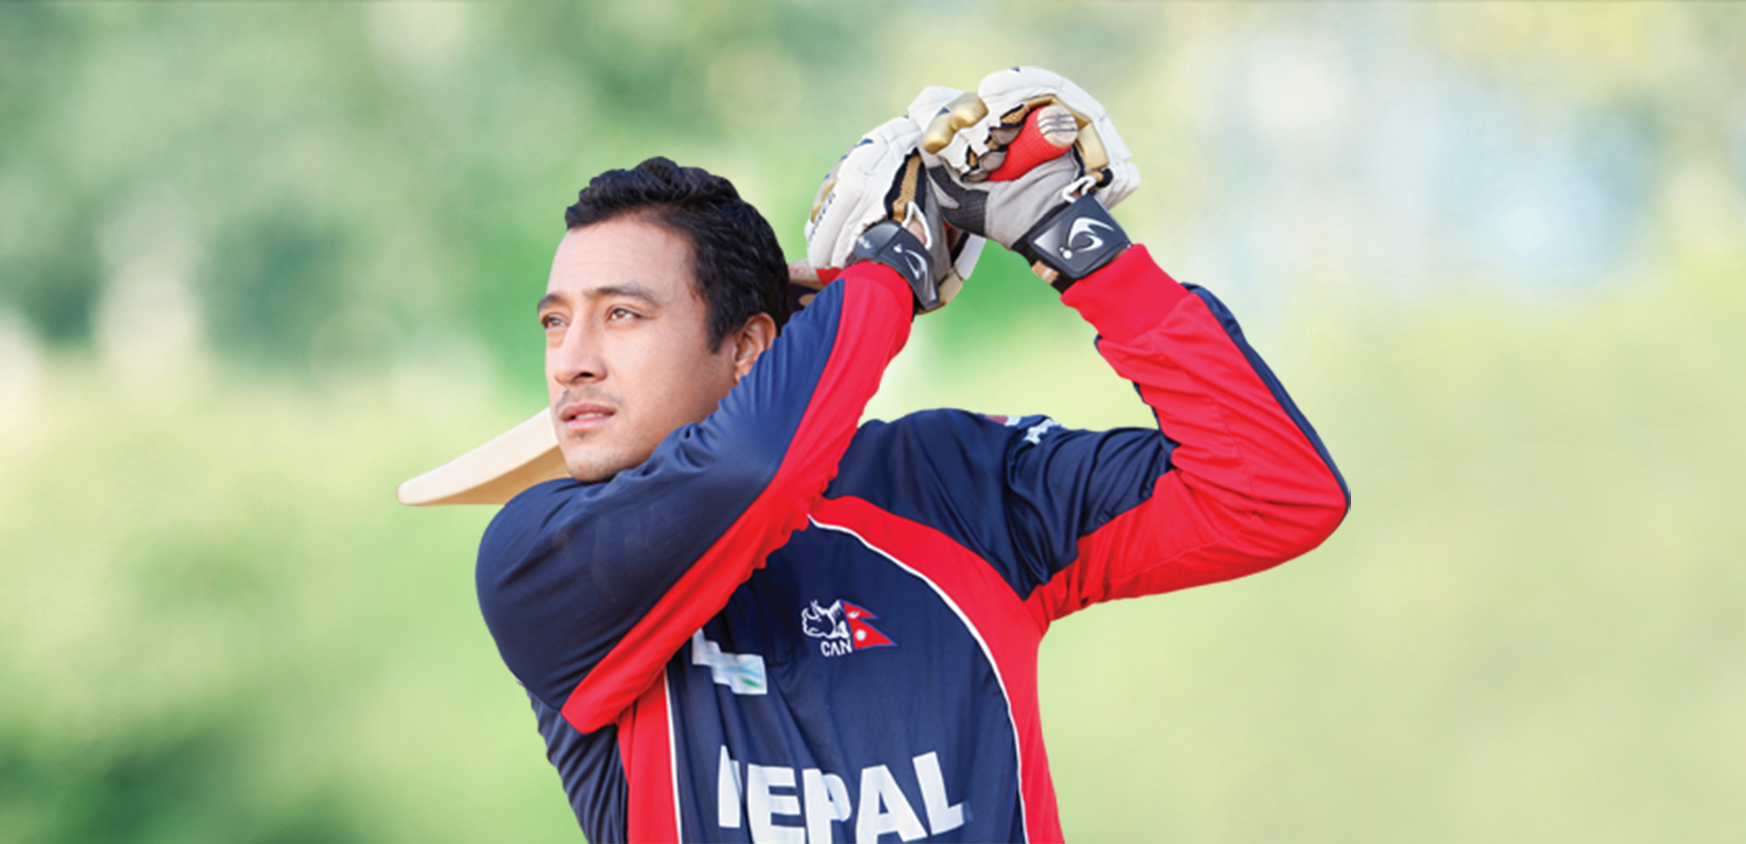 नेपाली क्रिकेट टिमले मलेशियालाई सजिलै हरायो , पारस बने हिरो